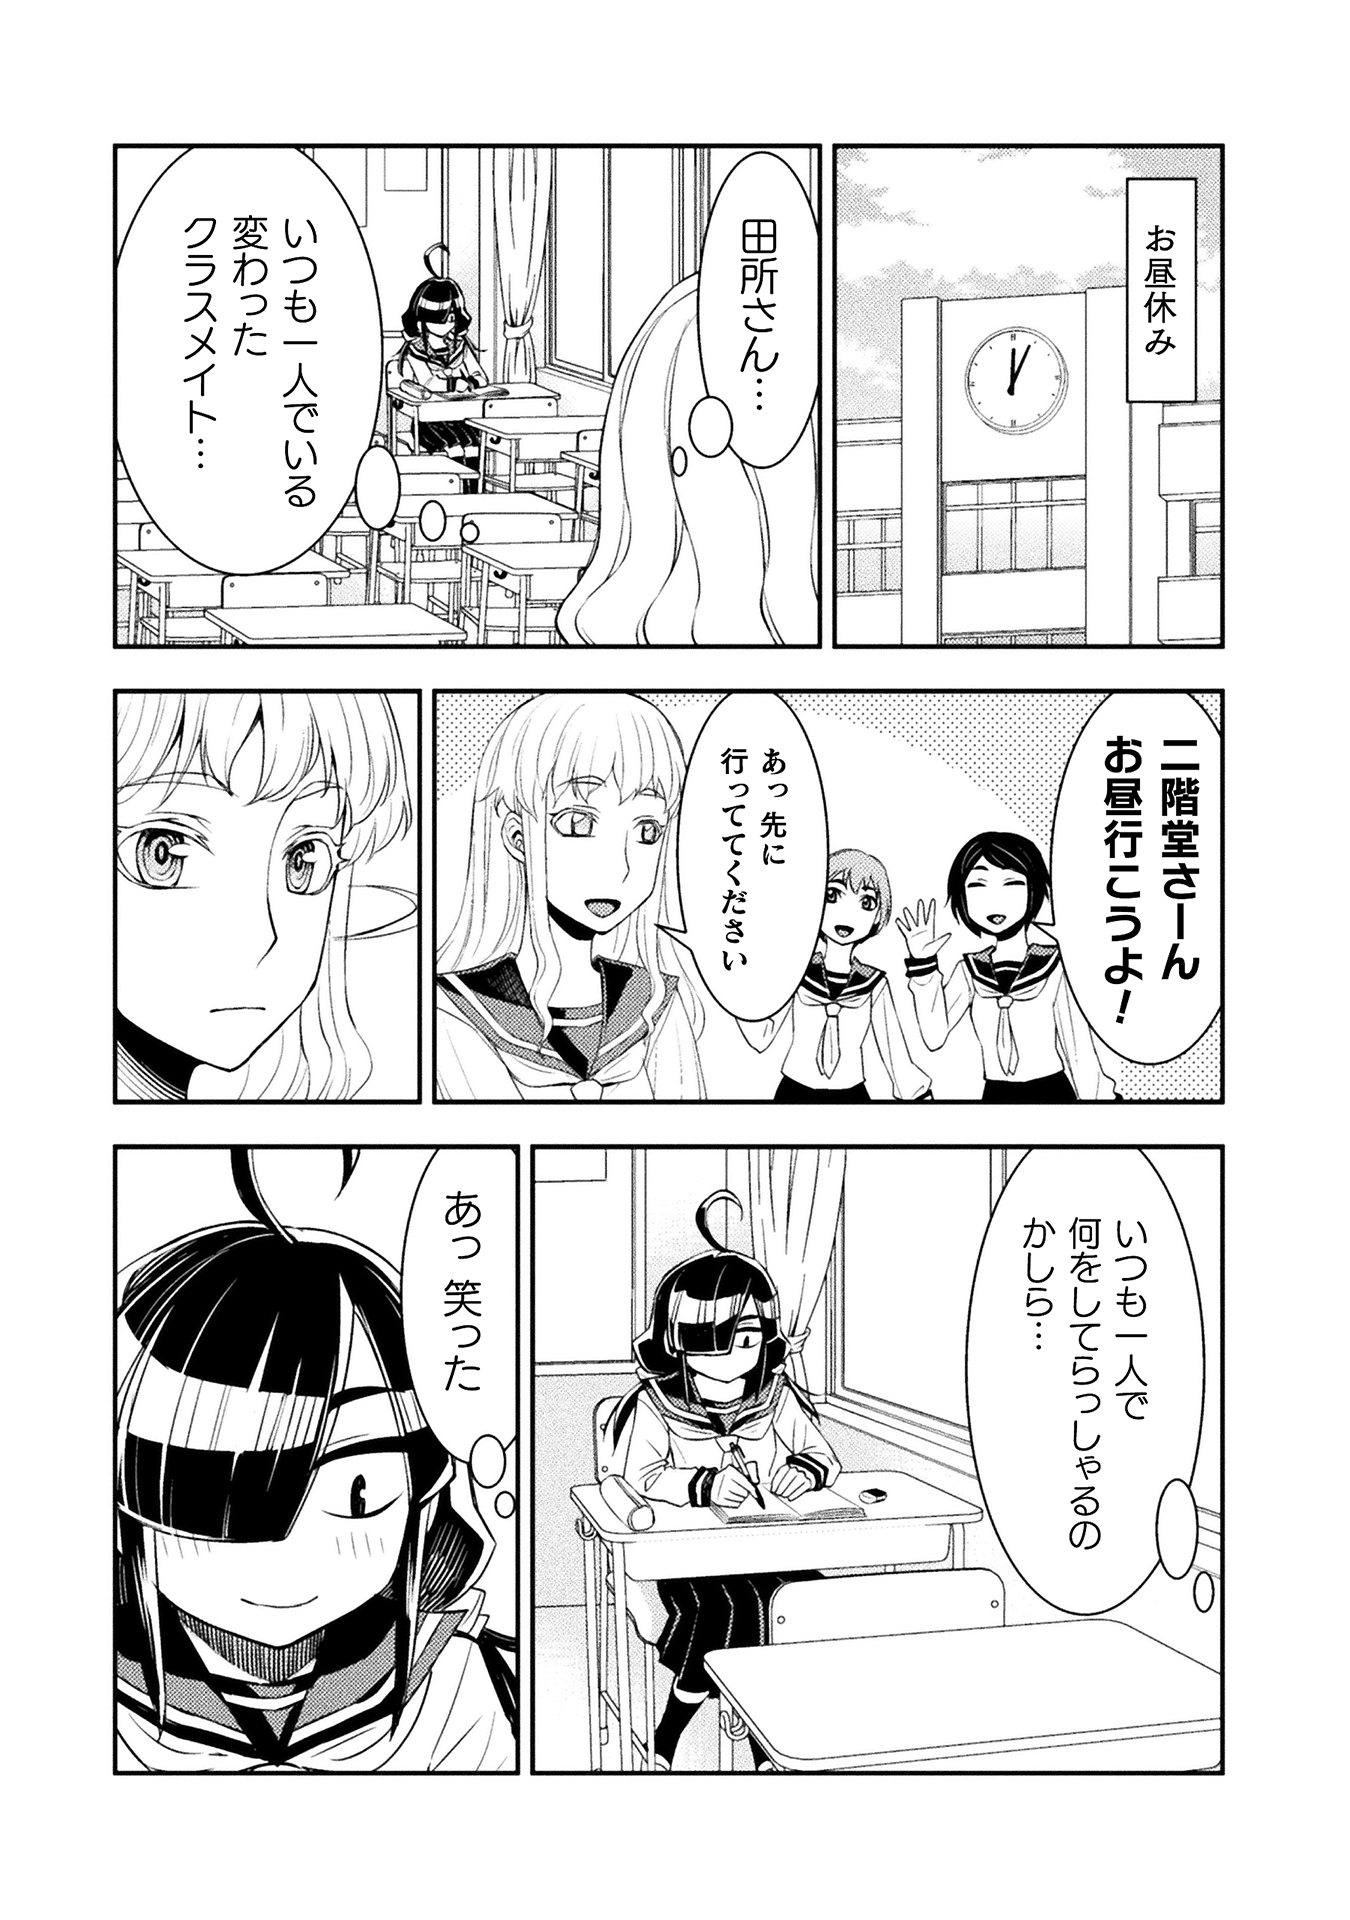 漫画「田所さん」が「アニメ化してほしいマンガランキング」にノミネート